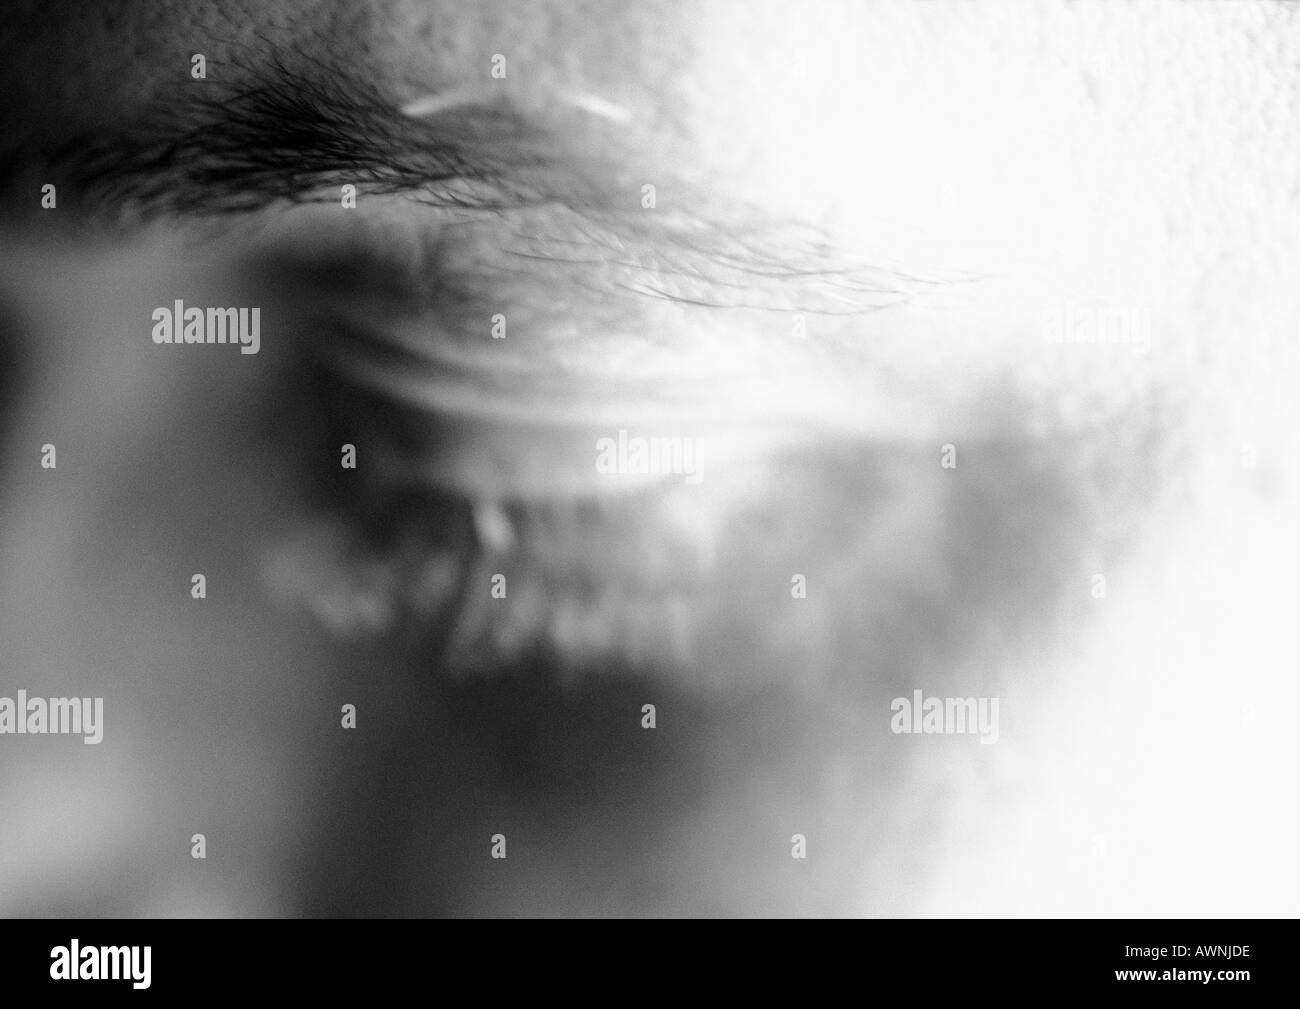 Des Menschen Auge, verschwommen, close-up, b&w Stockfoto